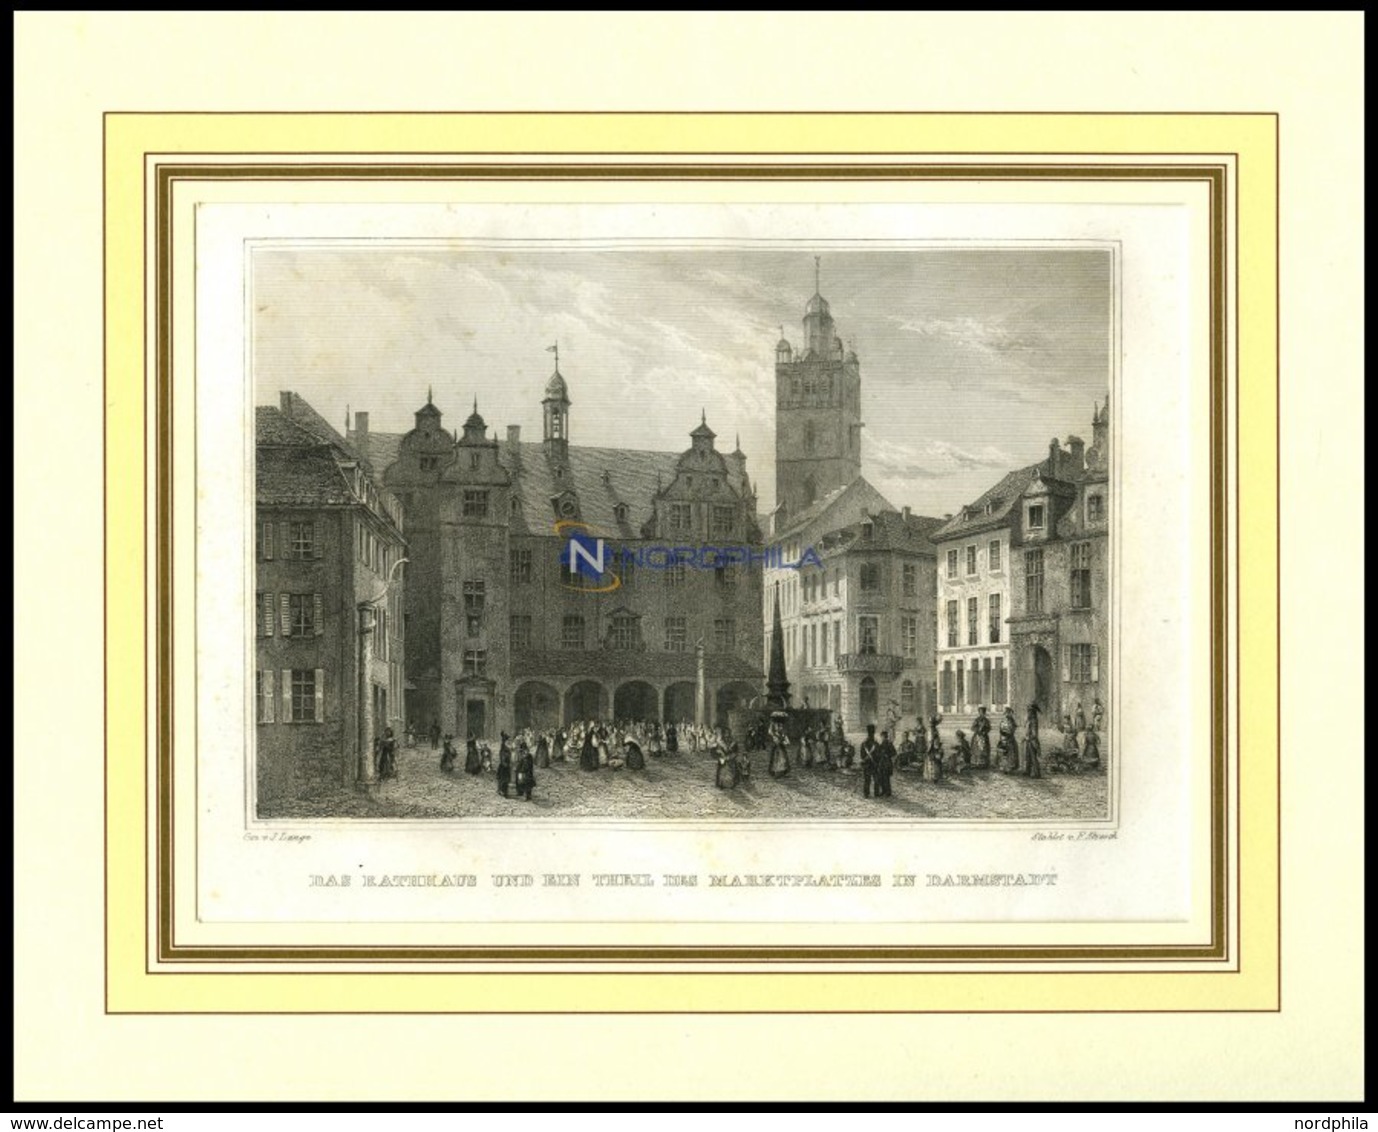 DARMSTADT: Das Rathaus Und Ein Teil Des Marktplatzes, Stahlstich Von Lange/Abresch, 1840 - Litografía